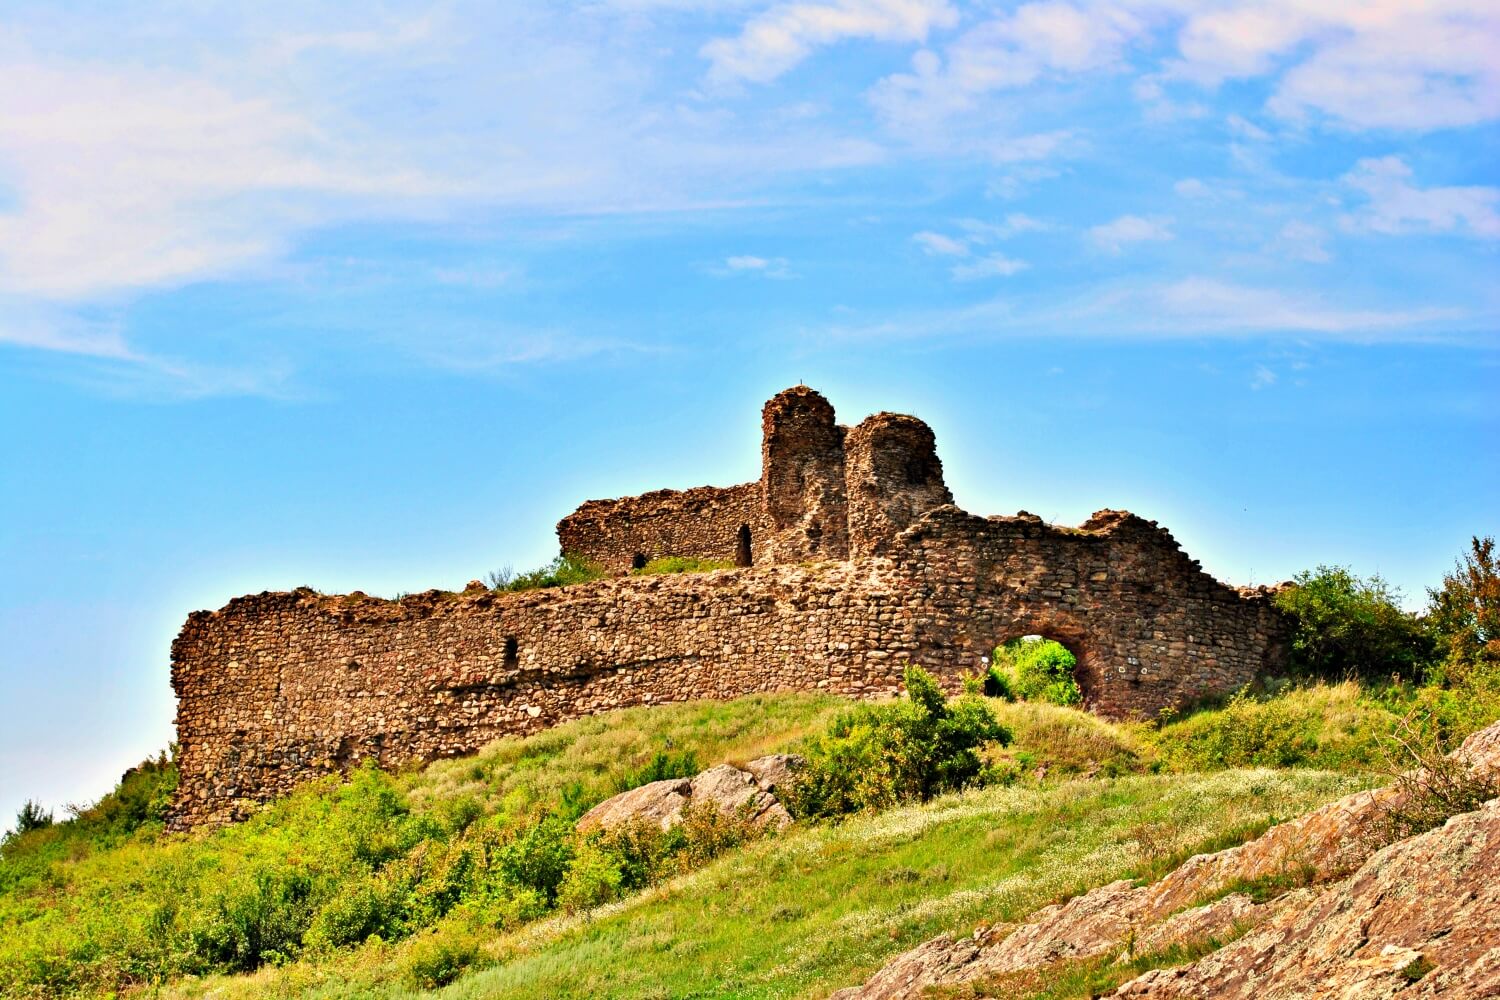 The Citadel of Șiria